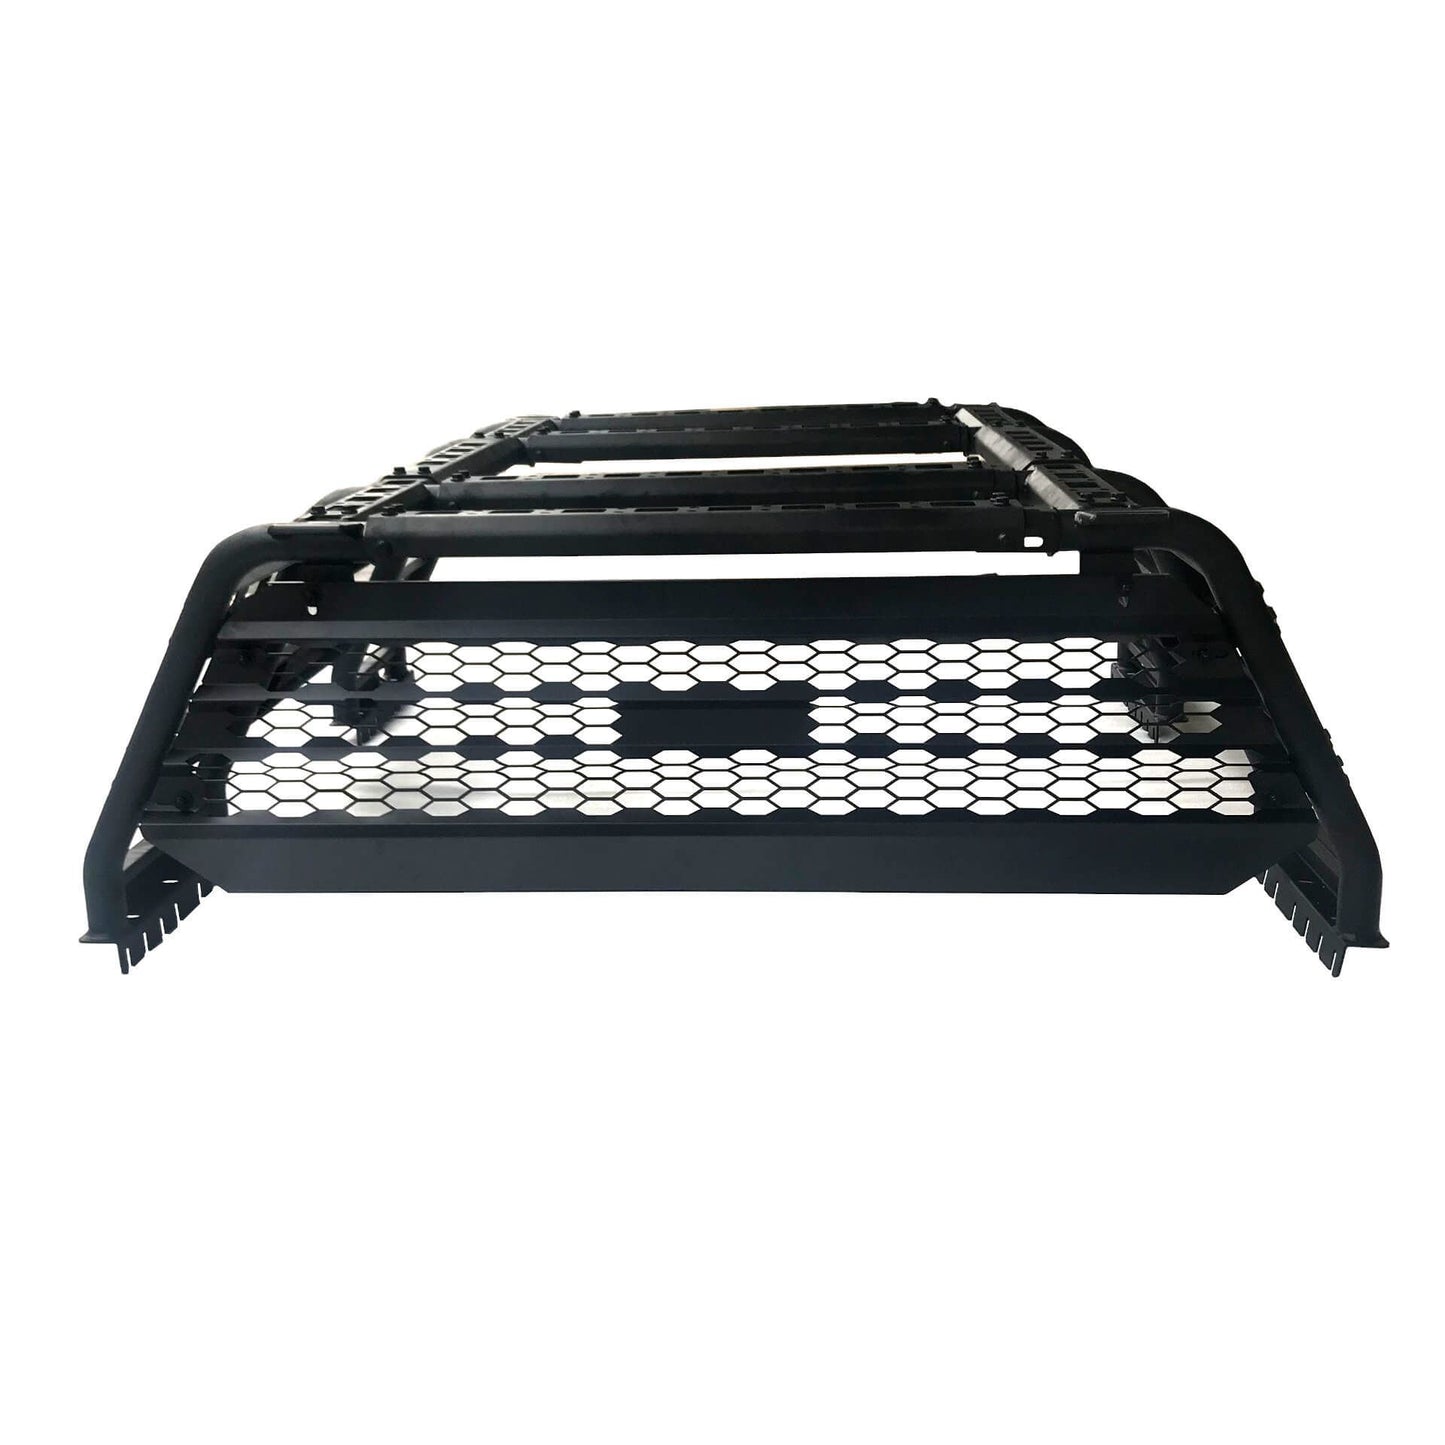 Adjustable Expedition Load Bed Rack Frame System for Nissan Navara D40 2006-2015